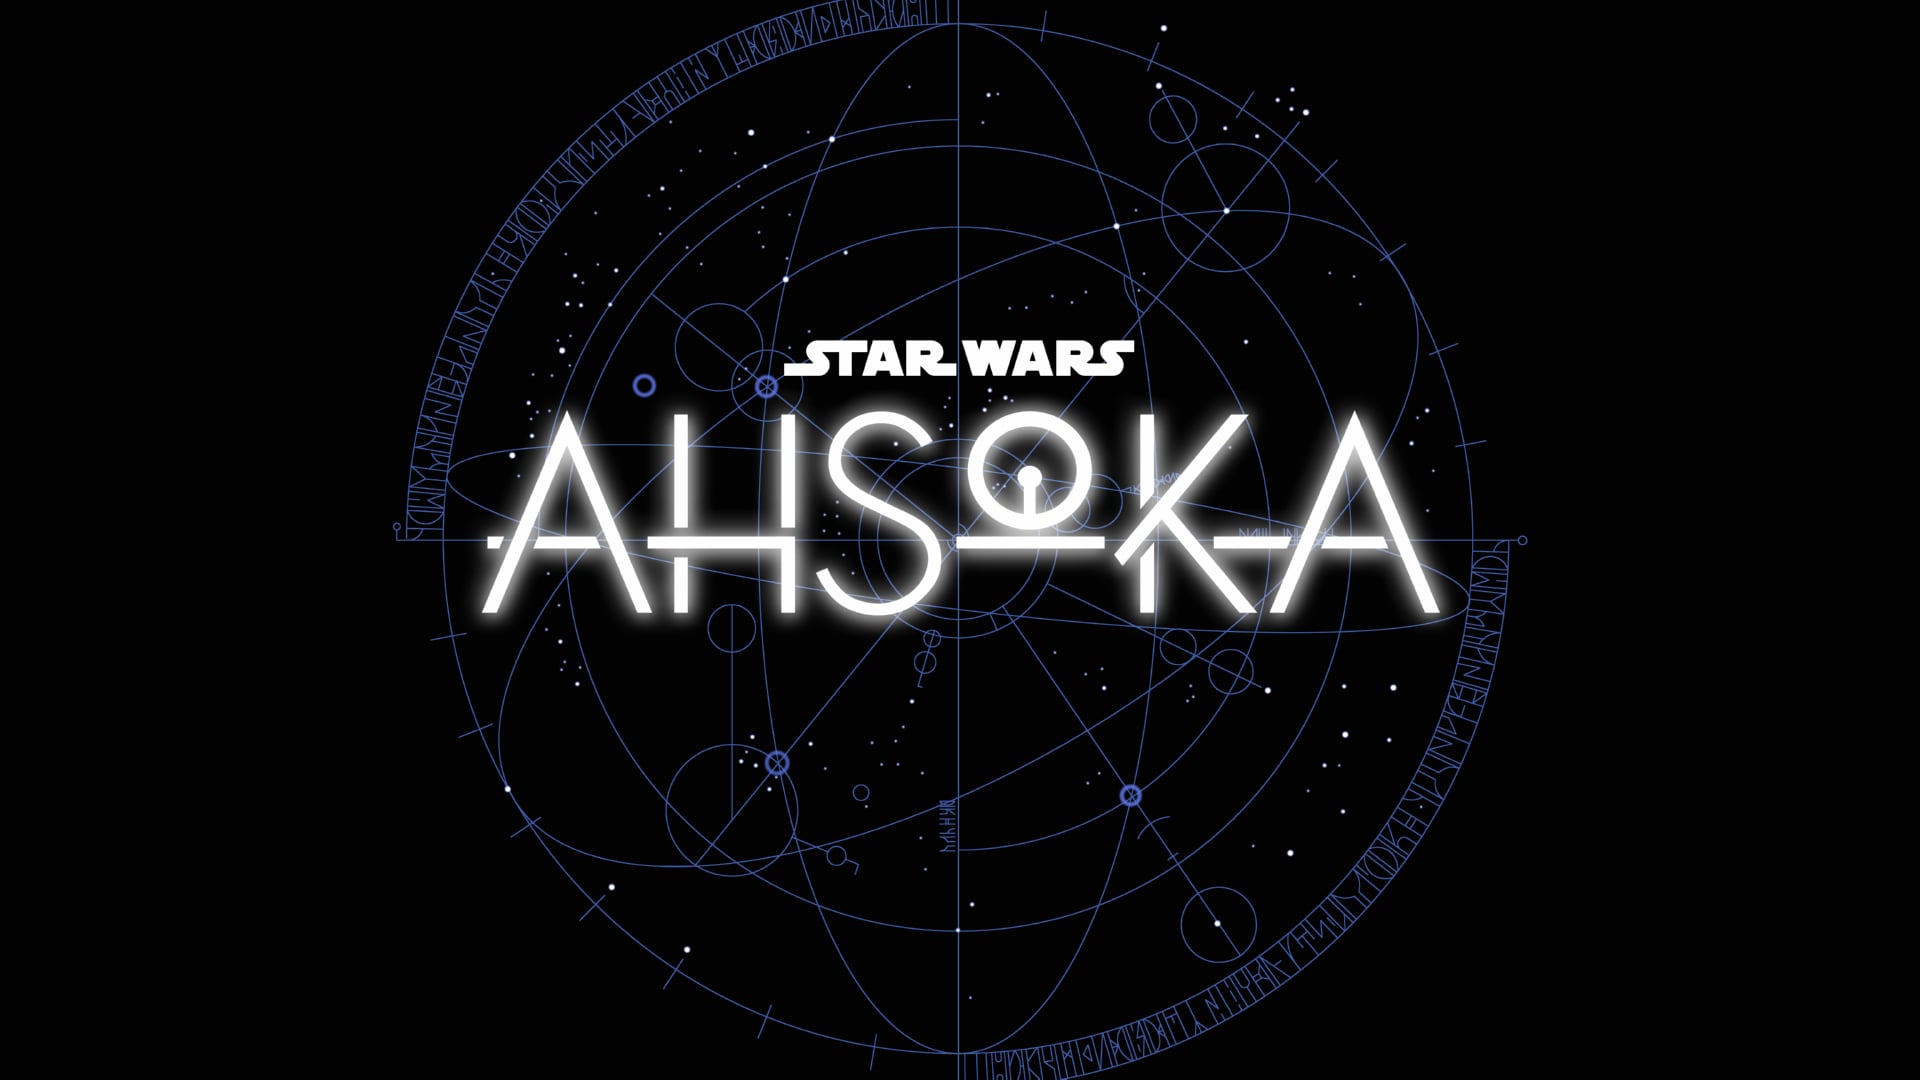 Digital Art Star Wars Ahsoka at 1600 x 1200 size wallpapers HD quality